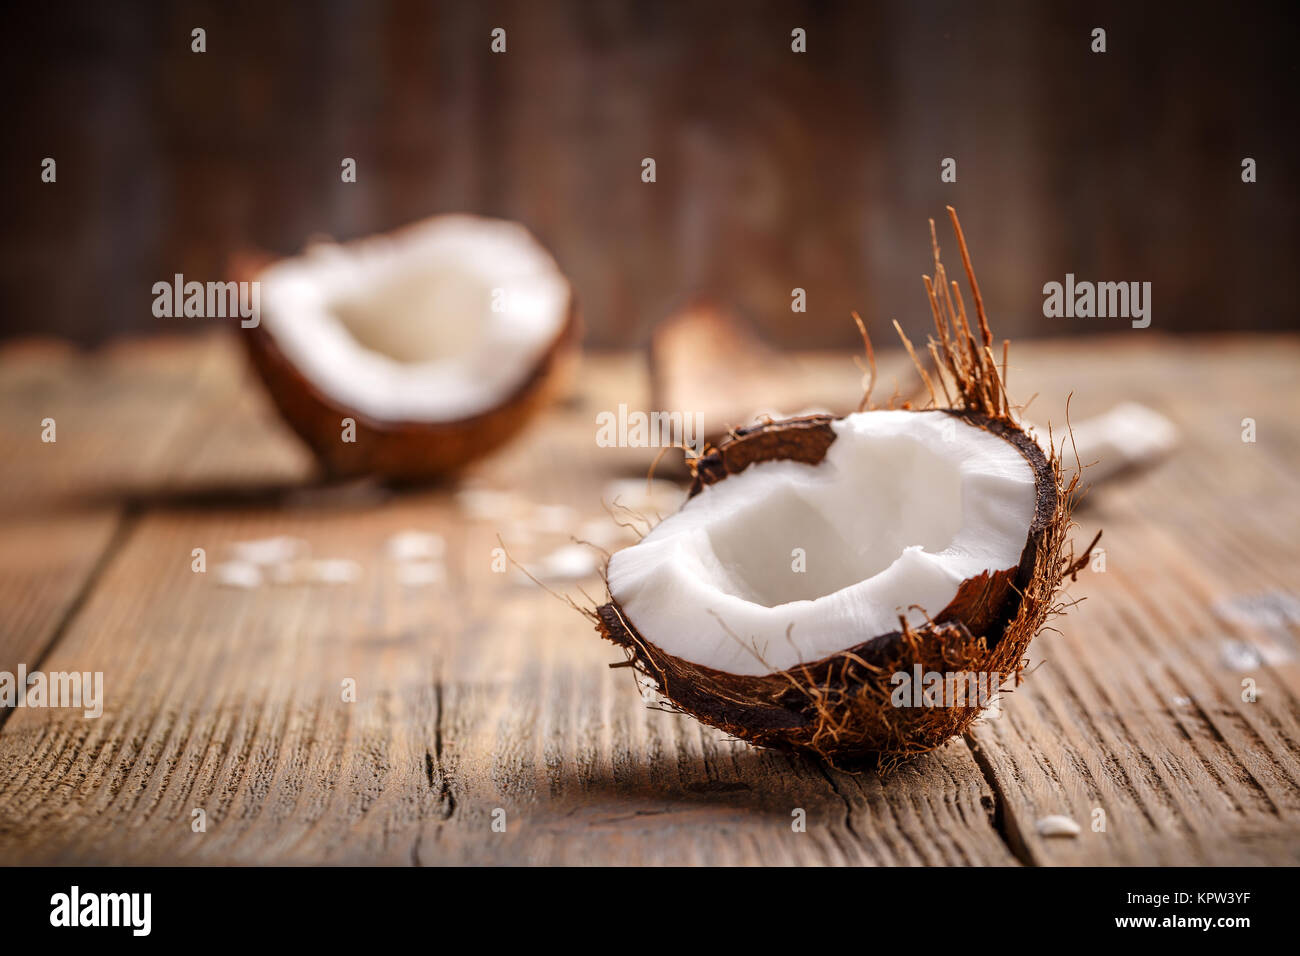 Coconut pieces Stock Photo